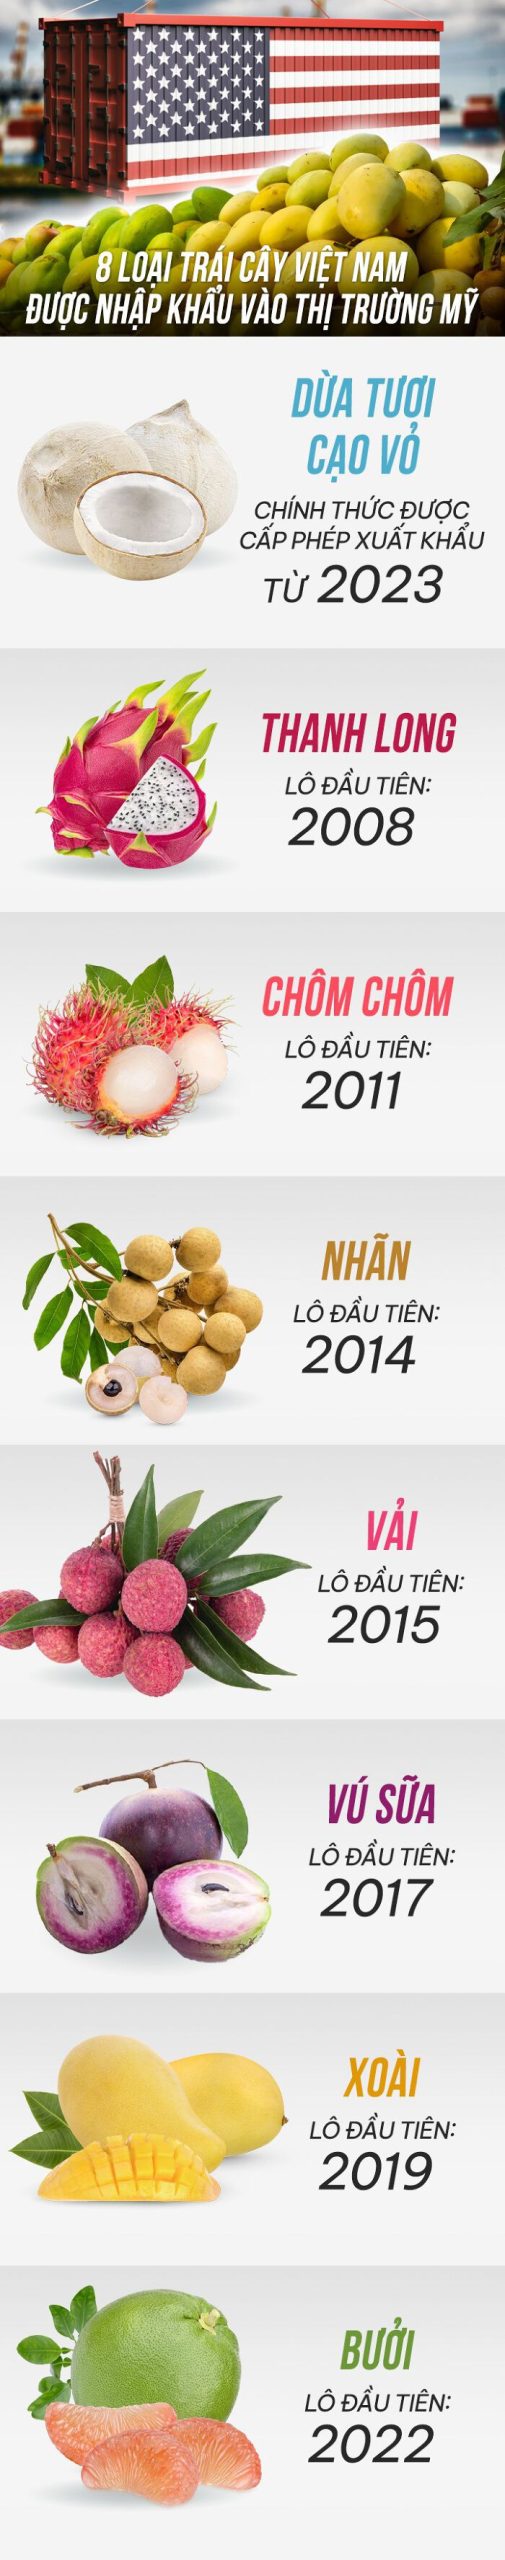 8 loại trái cây của Việt Nam được xuất khẩu sang Mỹ